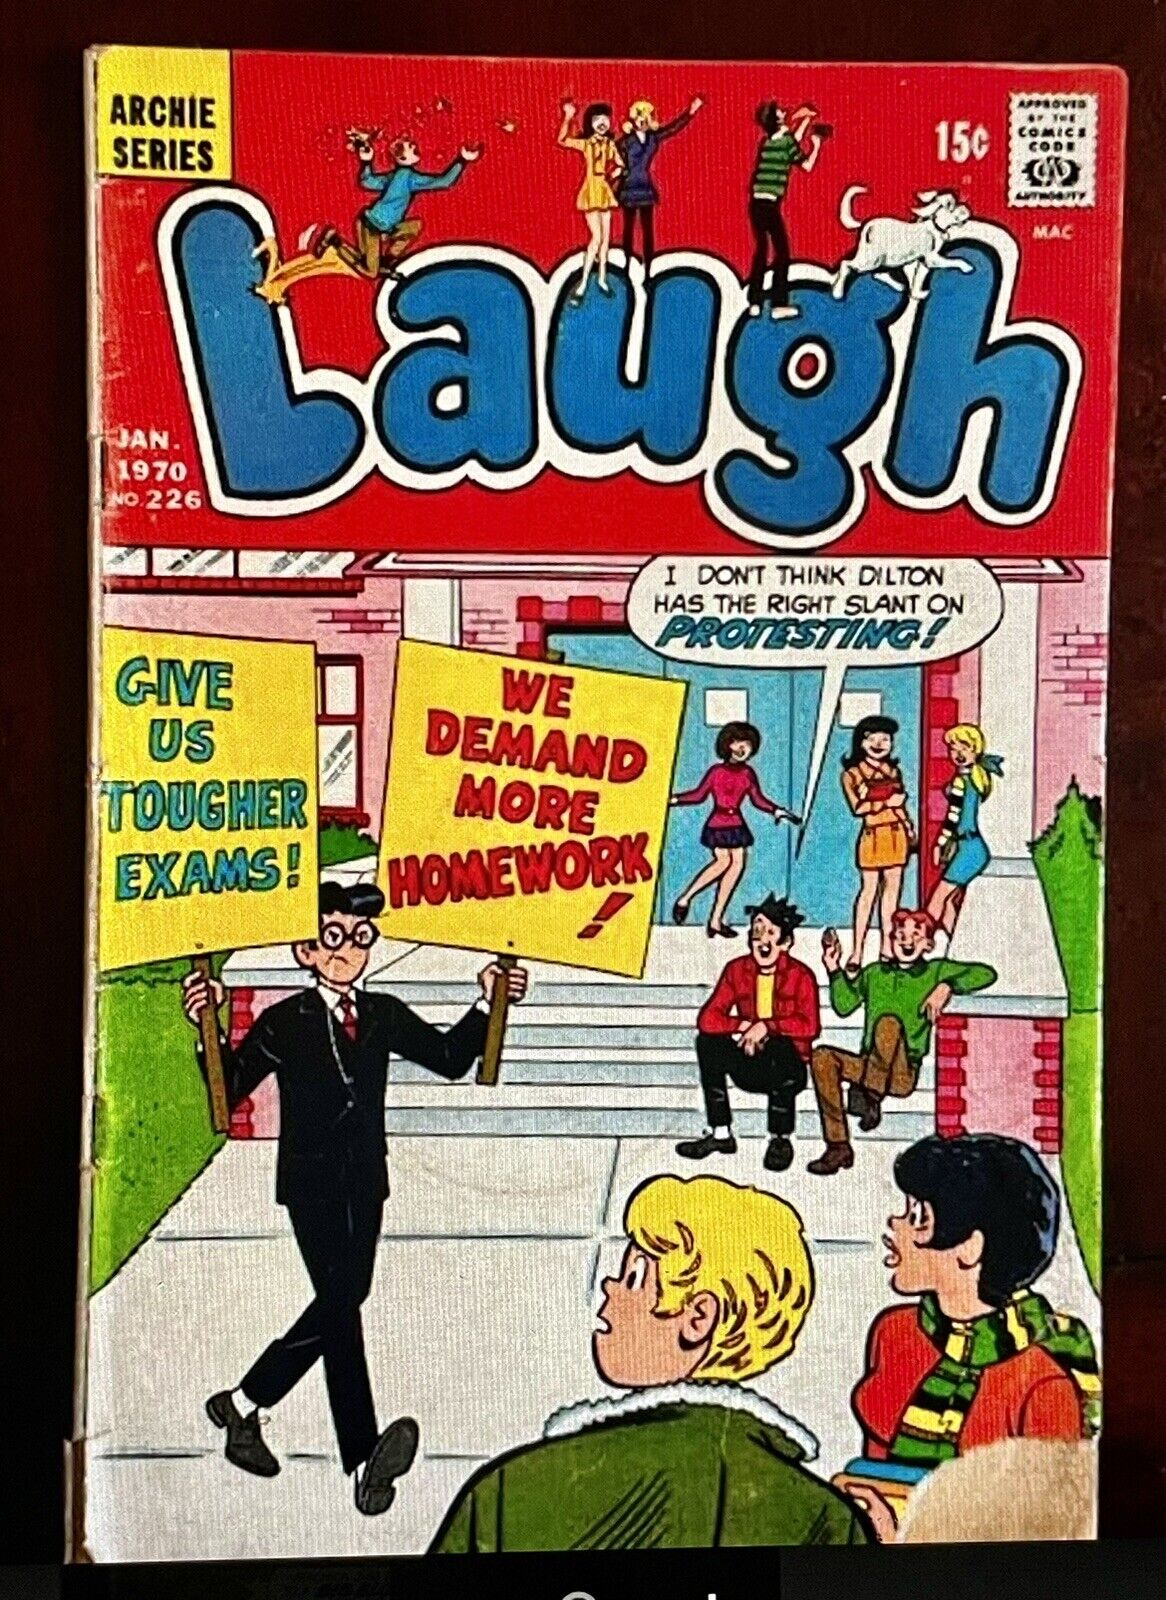 Vintage Archie Series Laugh Comics Book # 226 Jan 1970 Jughead 15 Cents